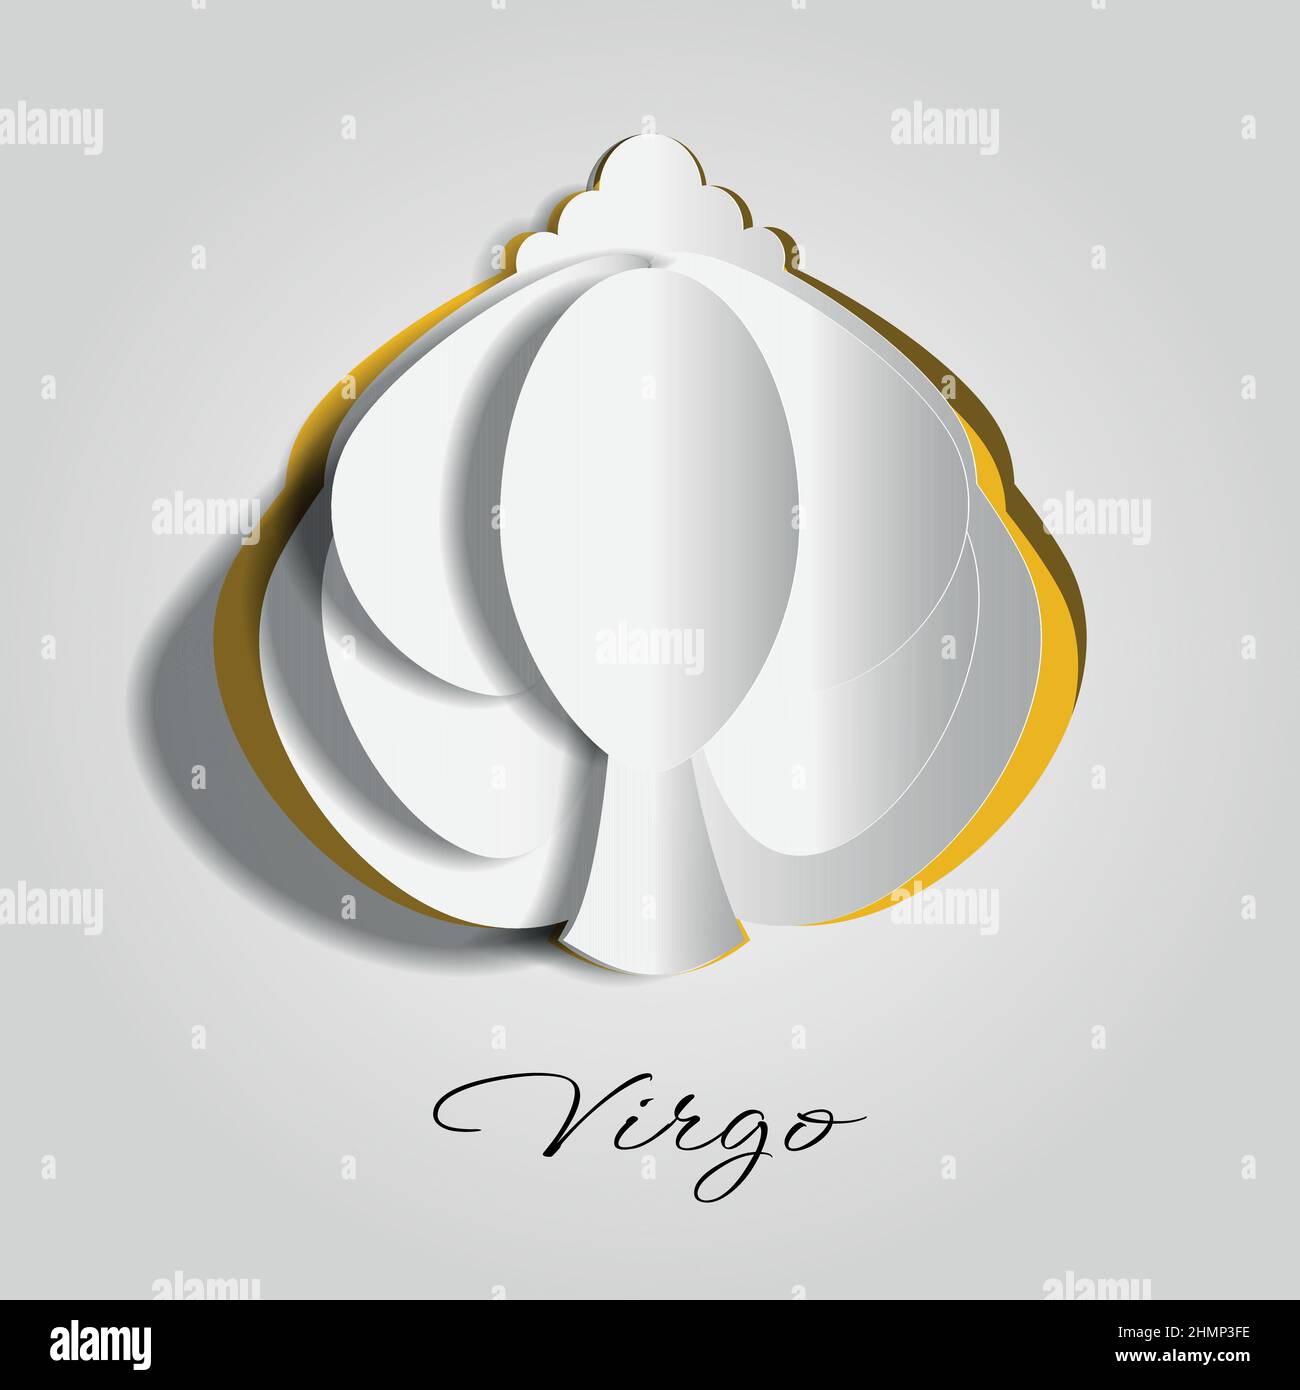 Virgo, simbolo zodiaco su carta tagliata o carta scolpita Illustrazione Vettoriale